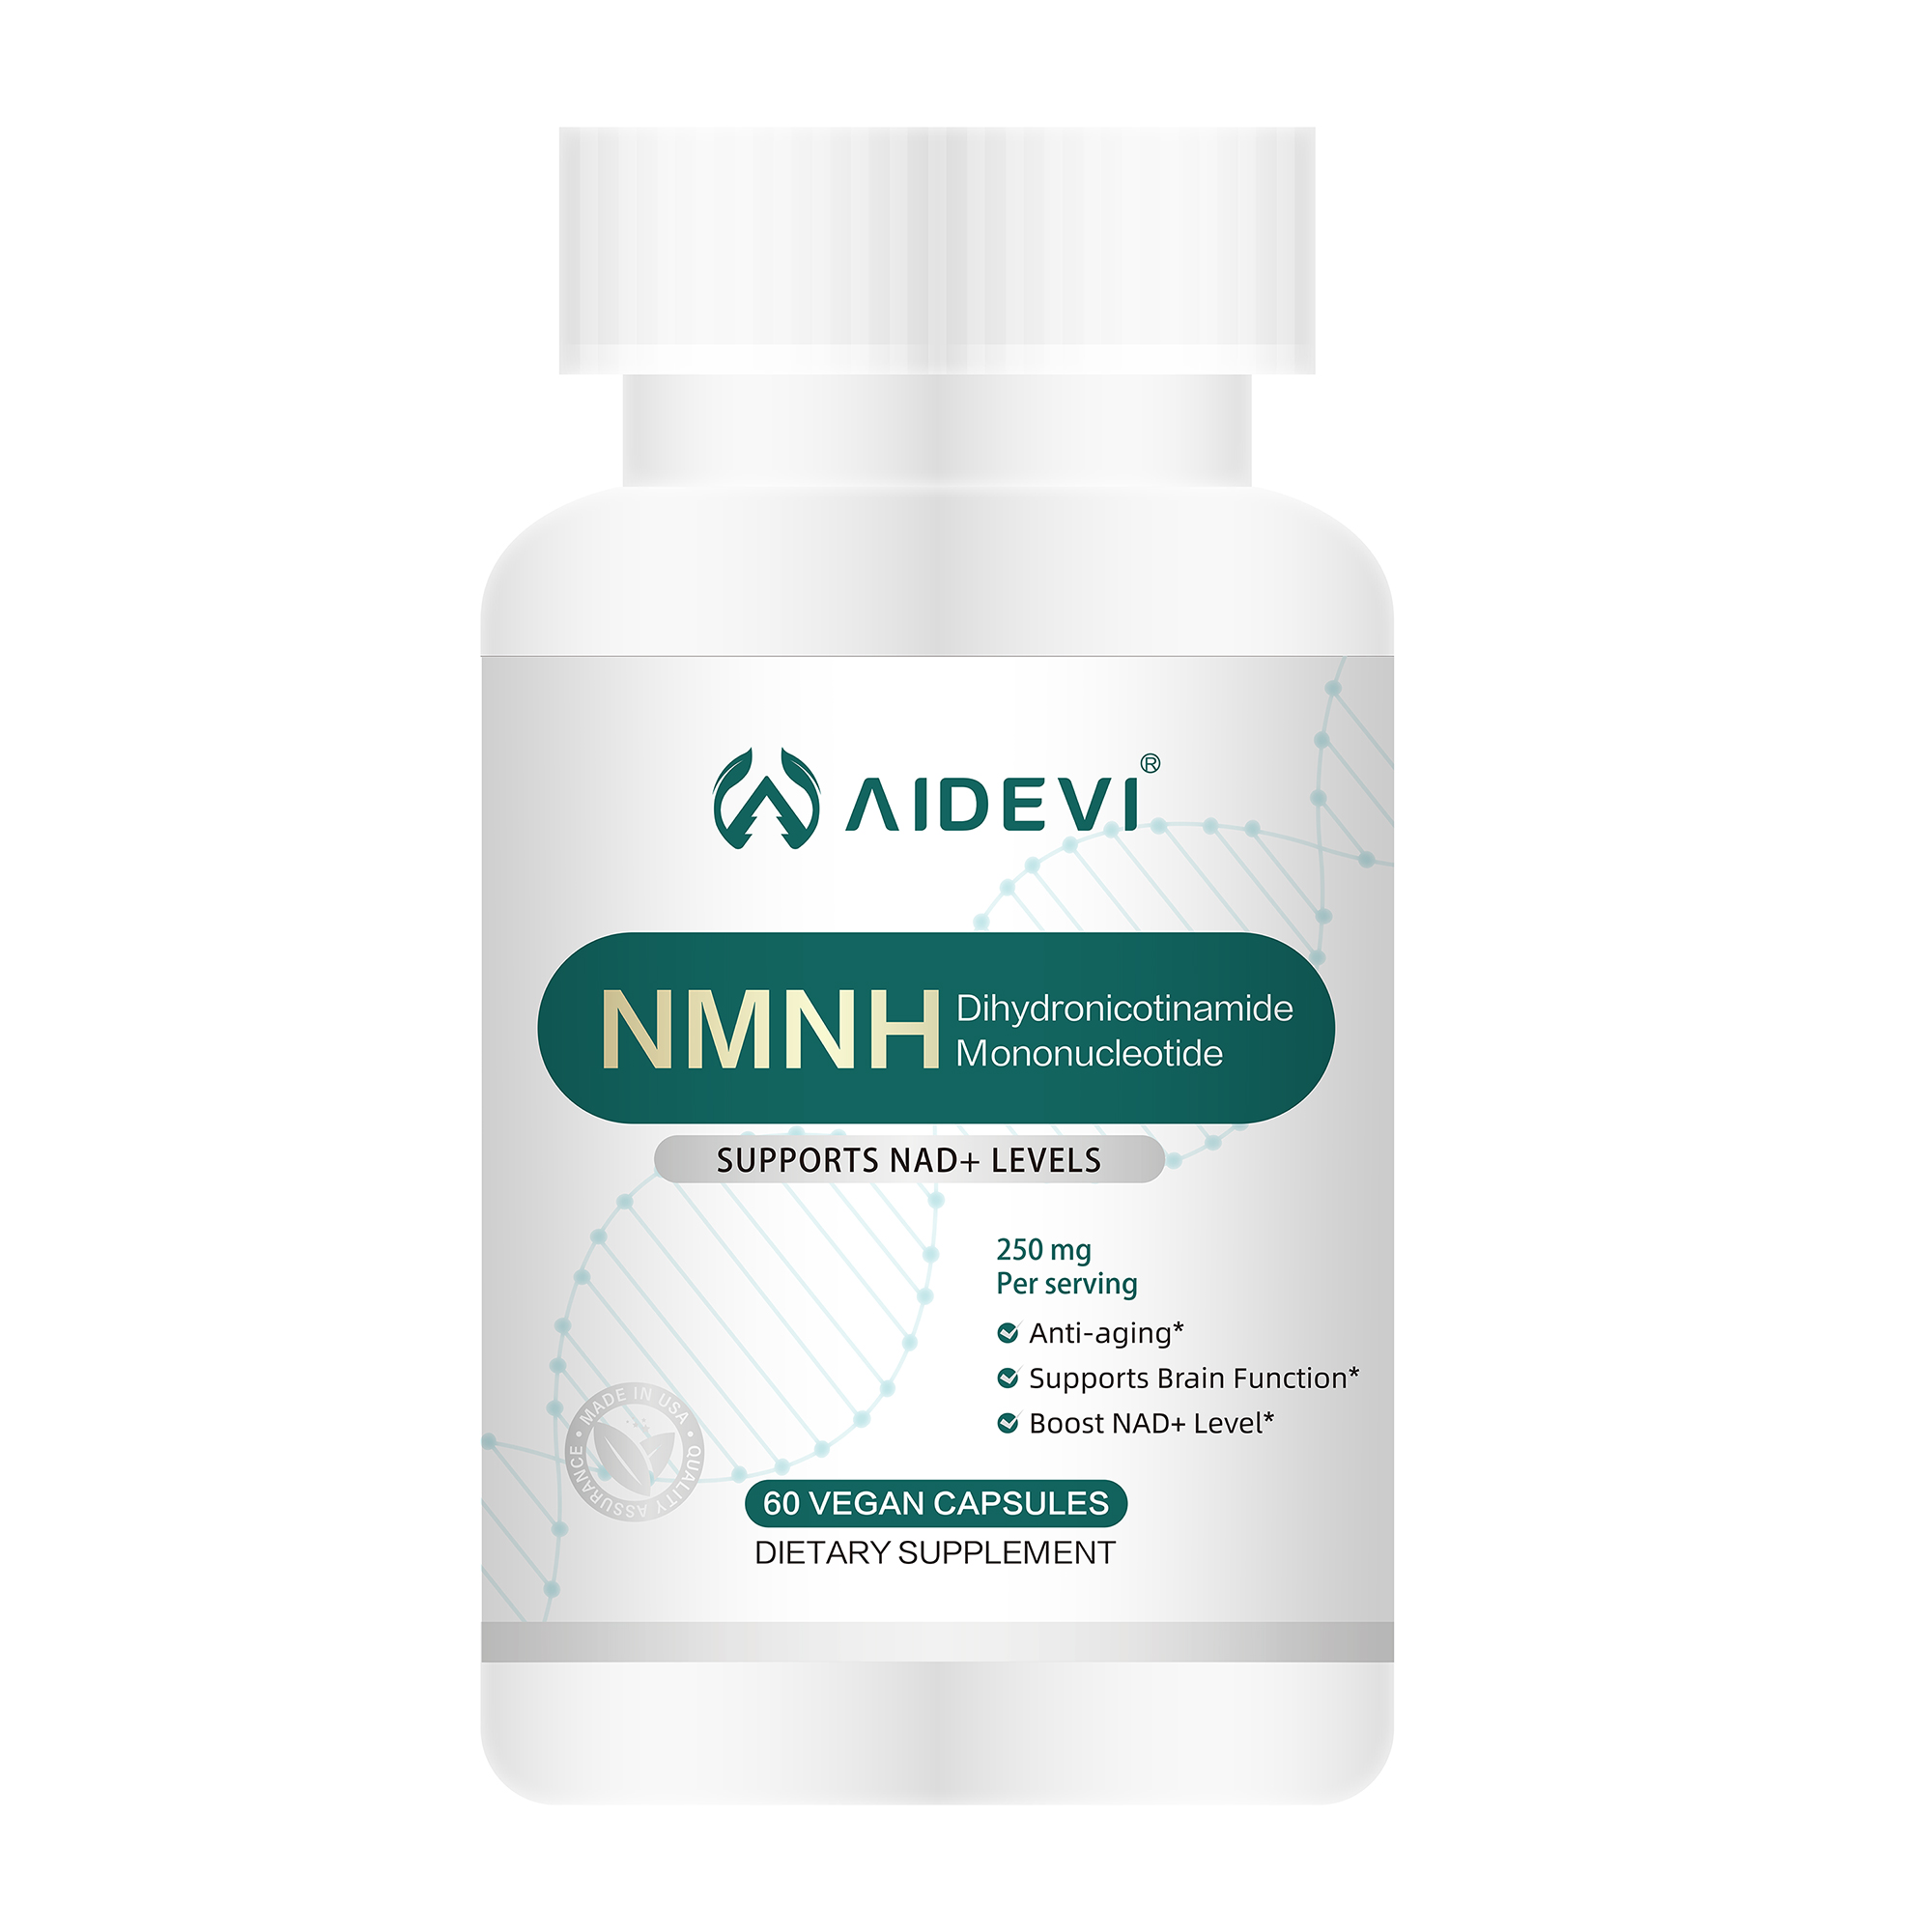 批发NMNH可以提高细胞的NADH水平吗？